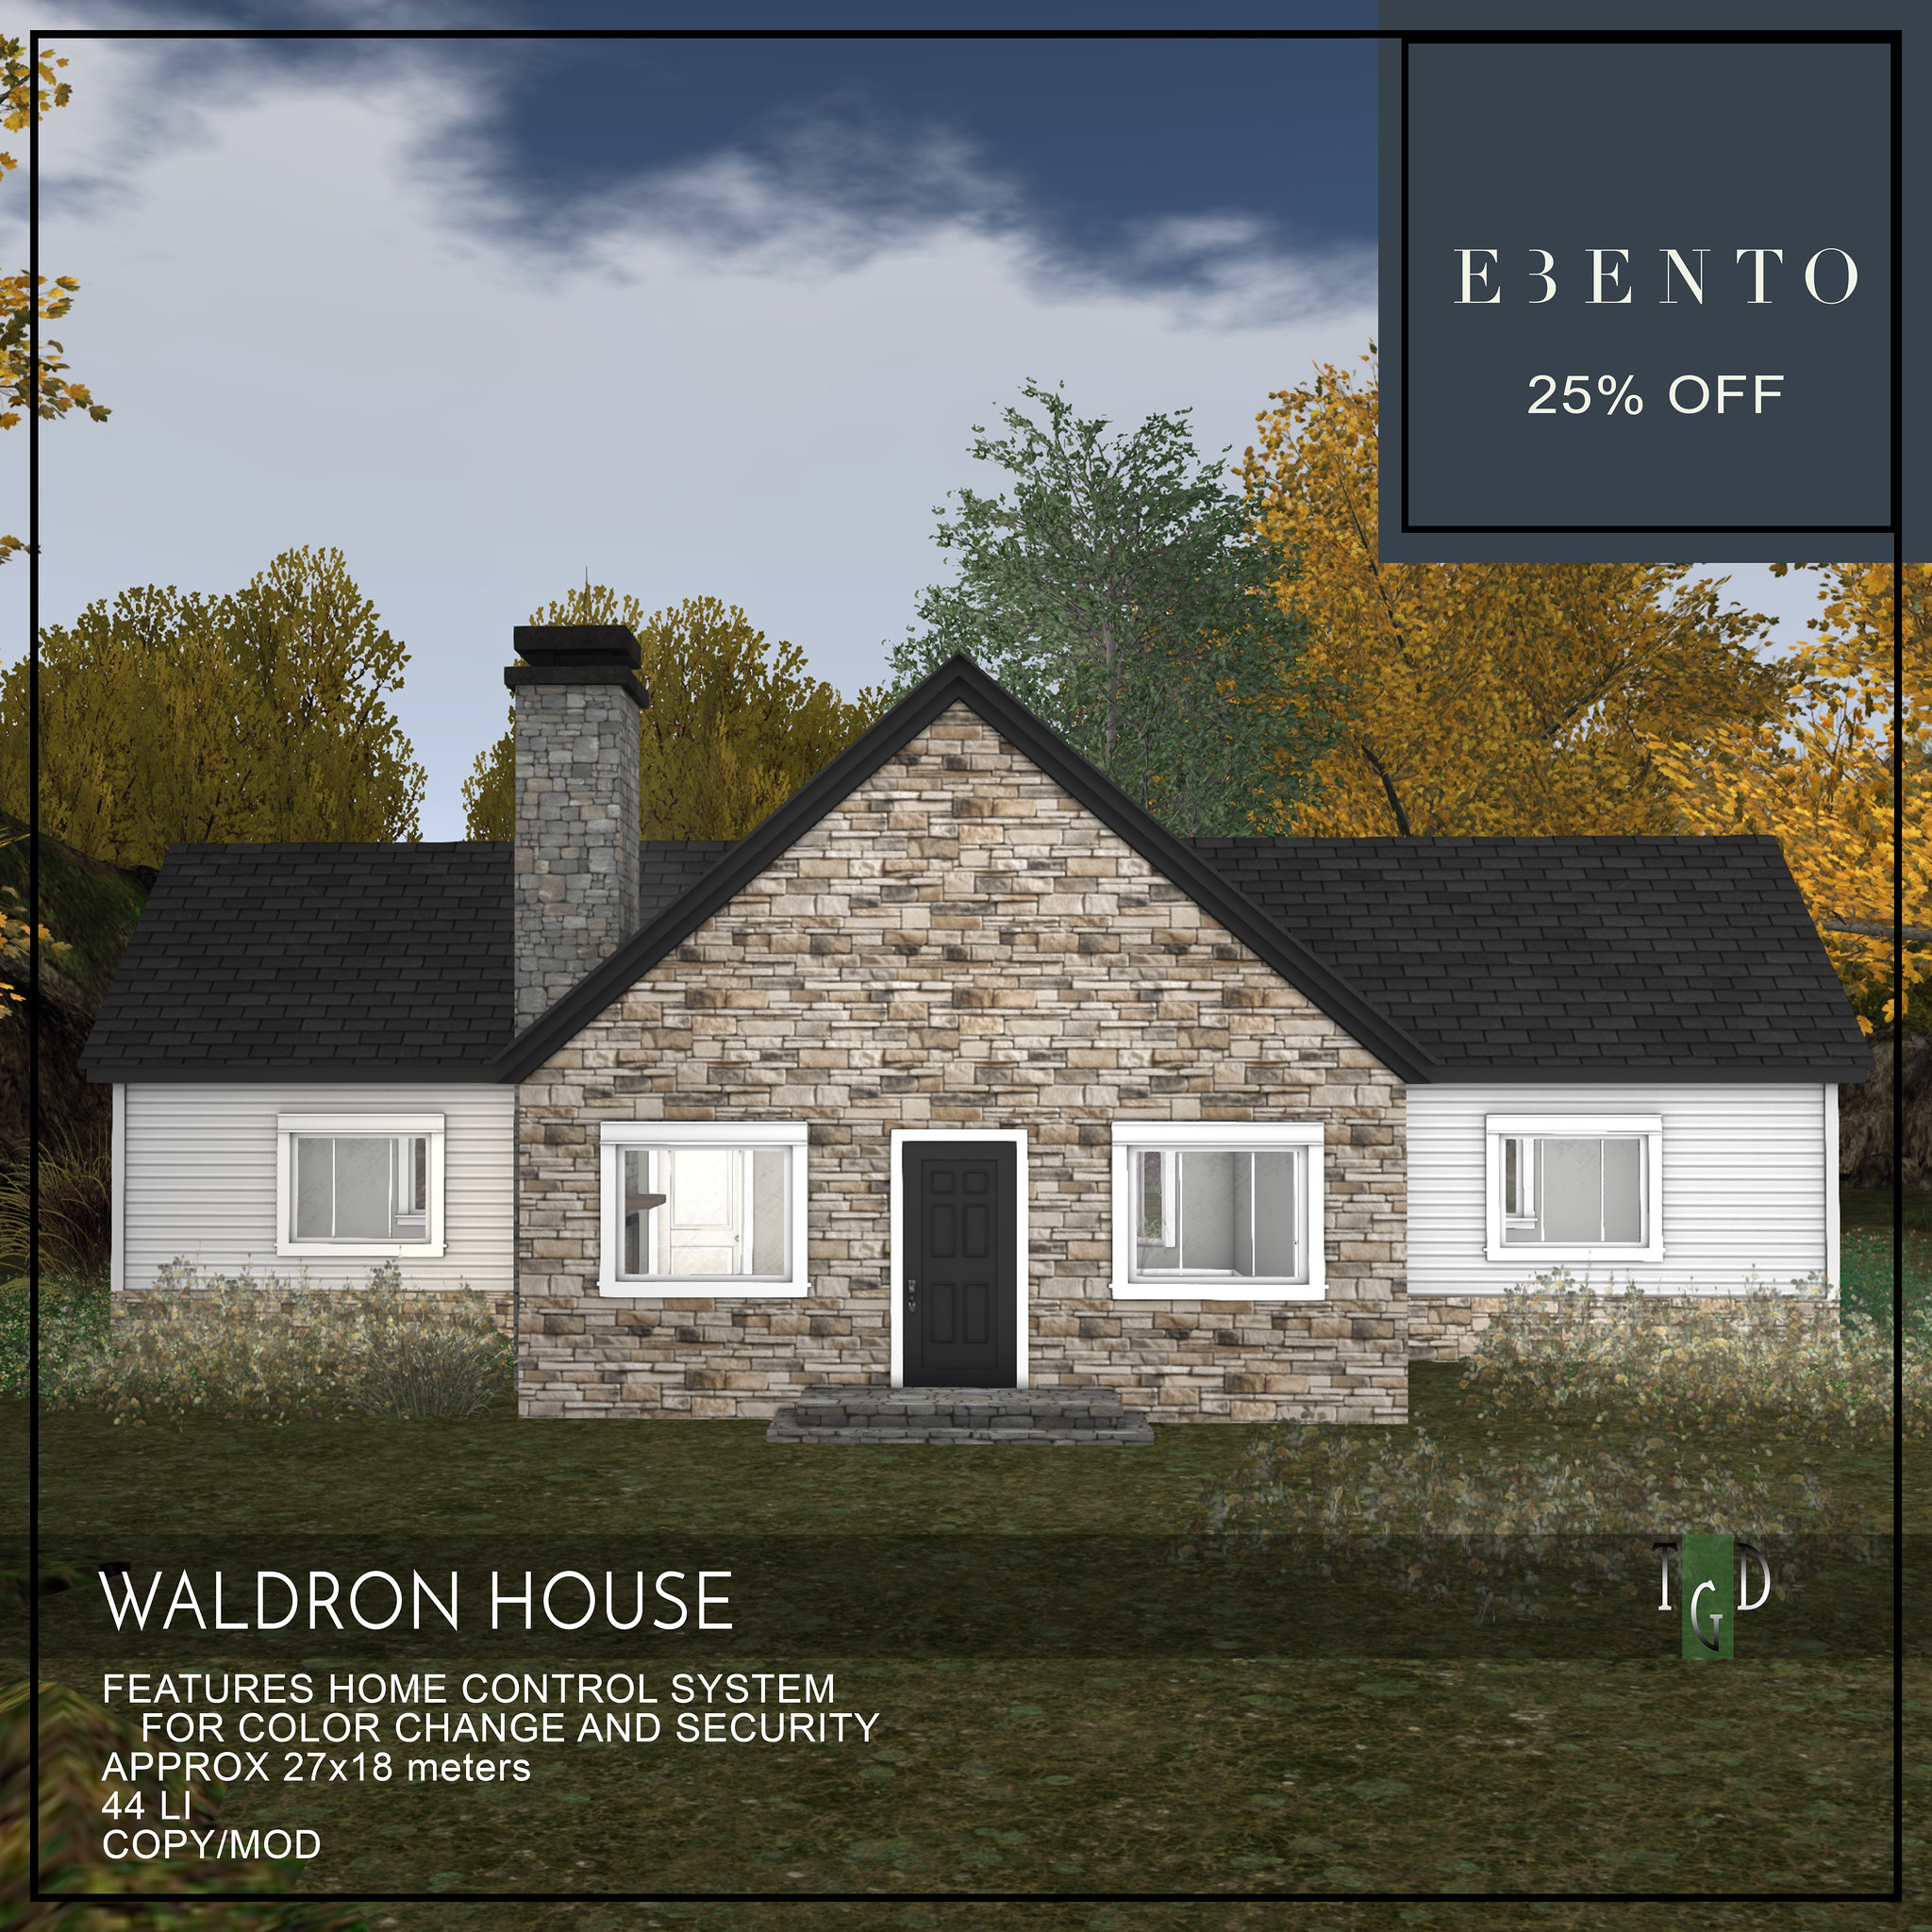 The Green Door – Waldron House